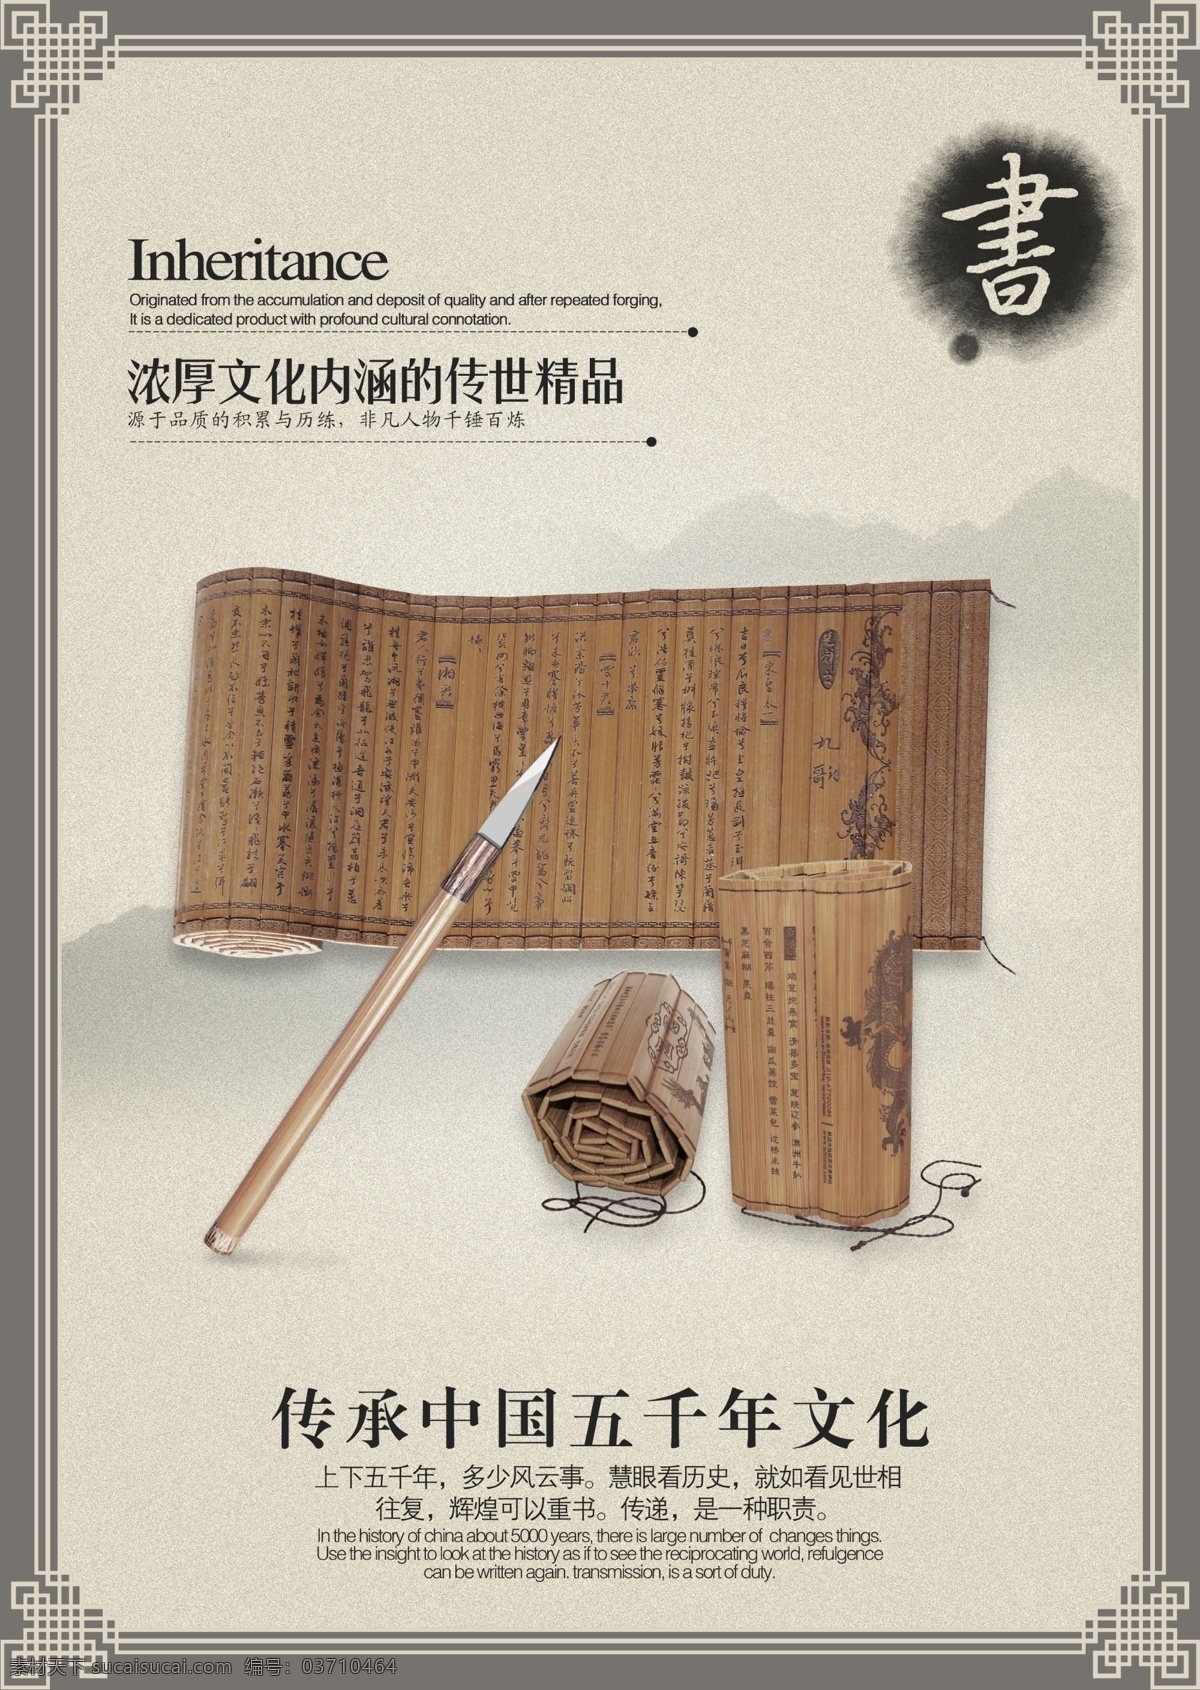 中国风 毛笔 竹简 笔筒 文化传承 五千年文化 海报 中国风海报